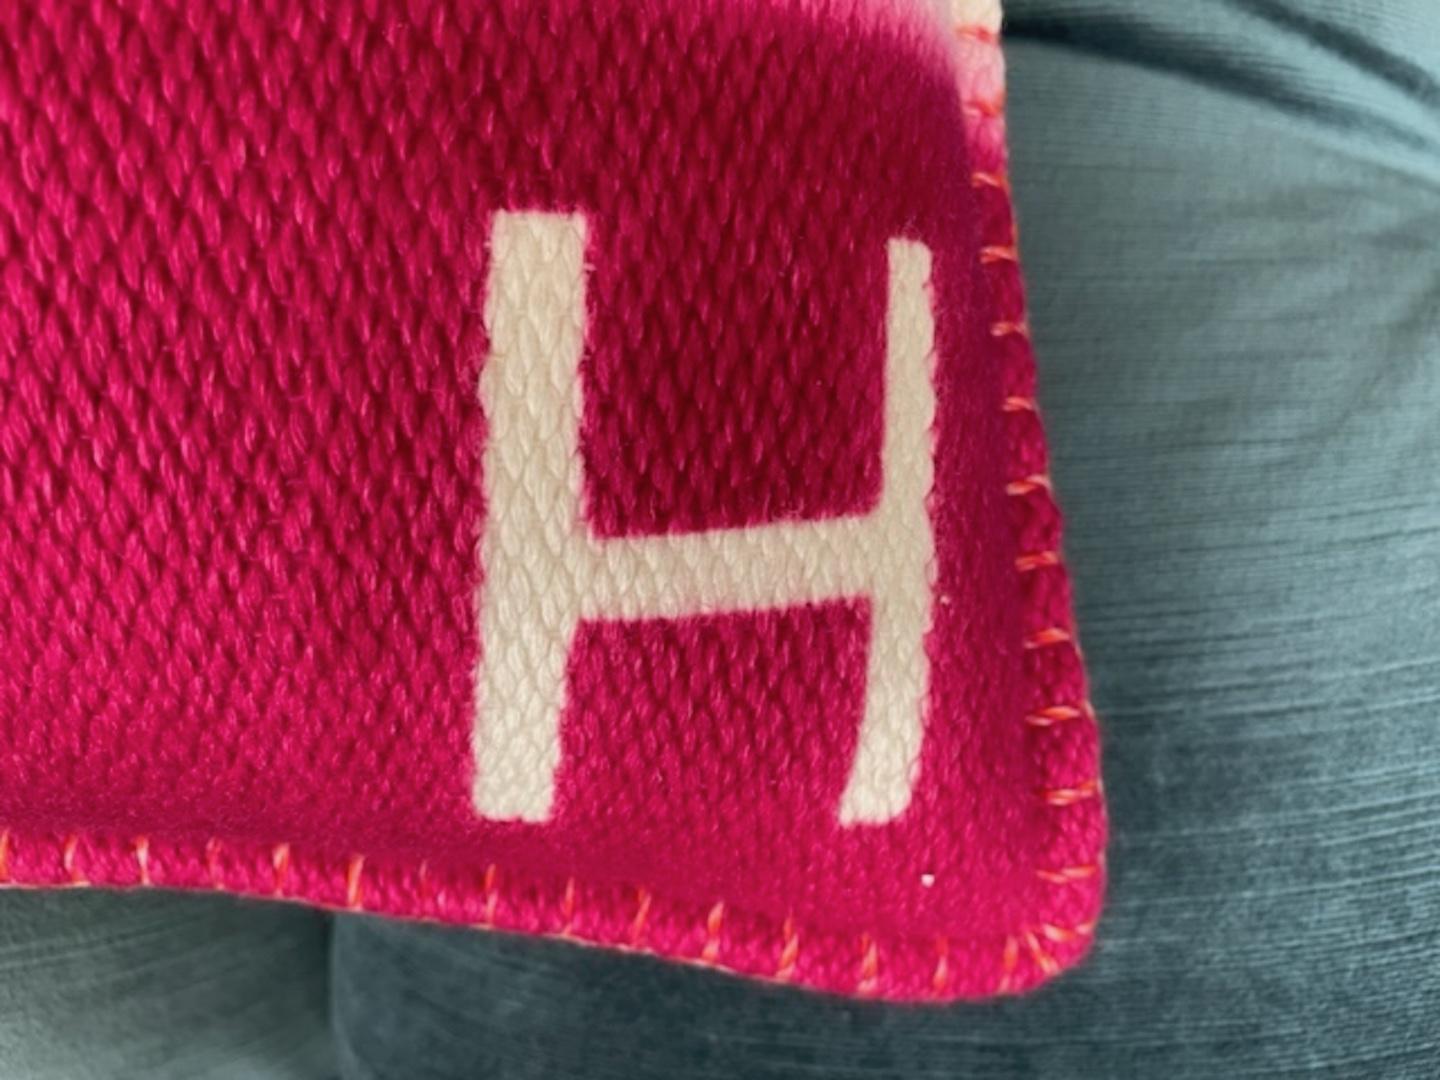 H Dye Pillow by Hermès 2